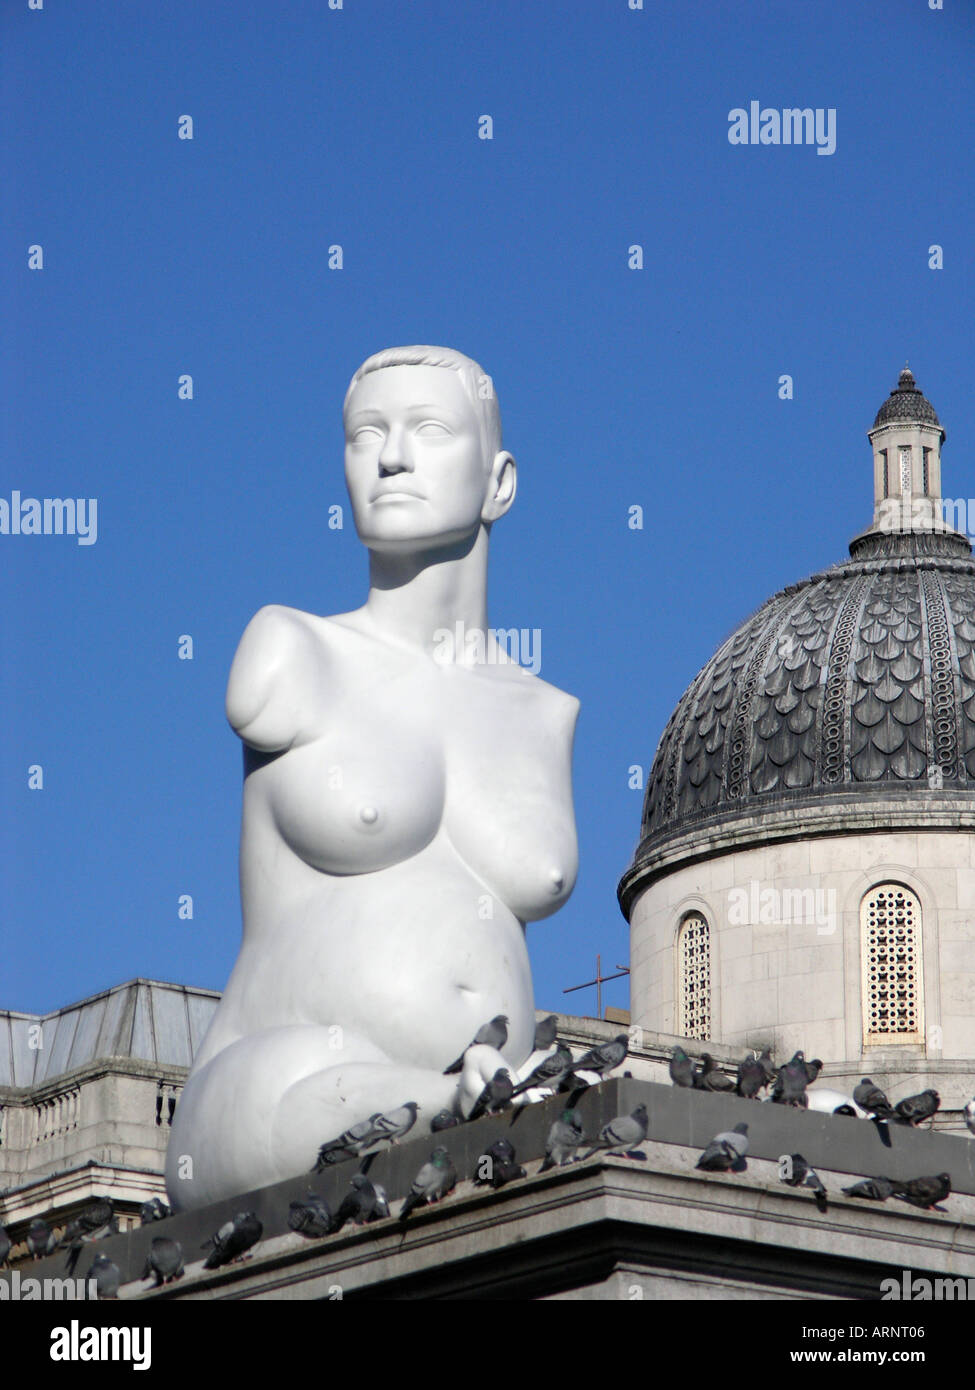 La statue de 'enceinte' Alison hdb par l'artiste Marc Quinn dans Trafalgar Squares quatrième plinth London England UK Europe EU Banque D'Images